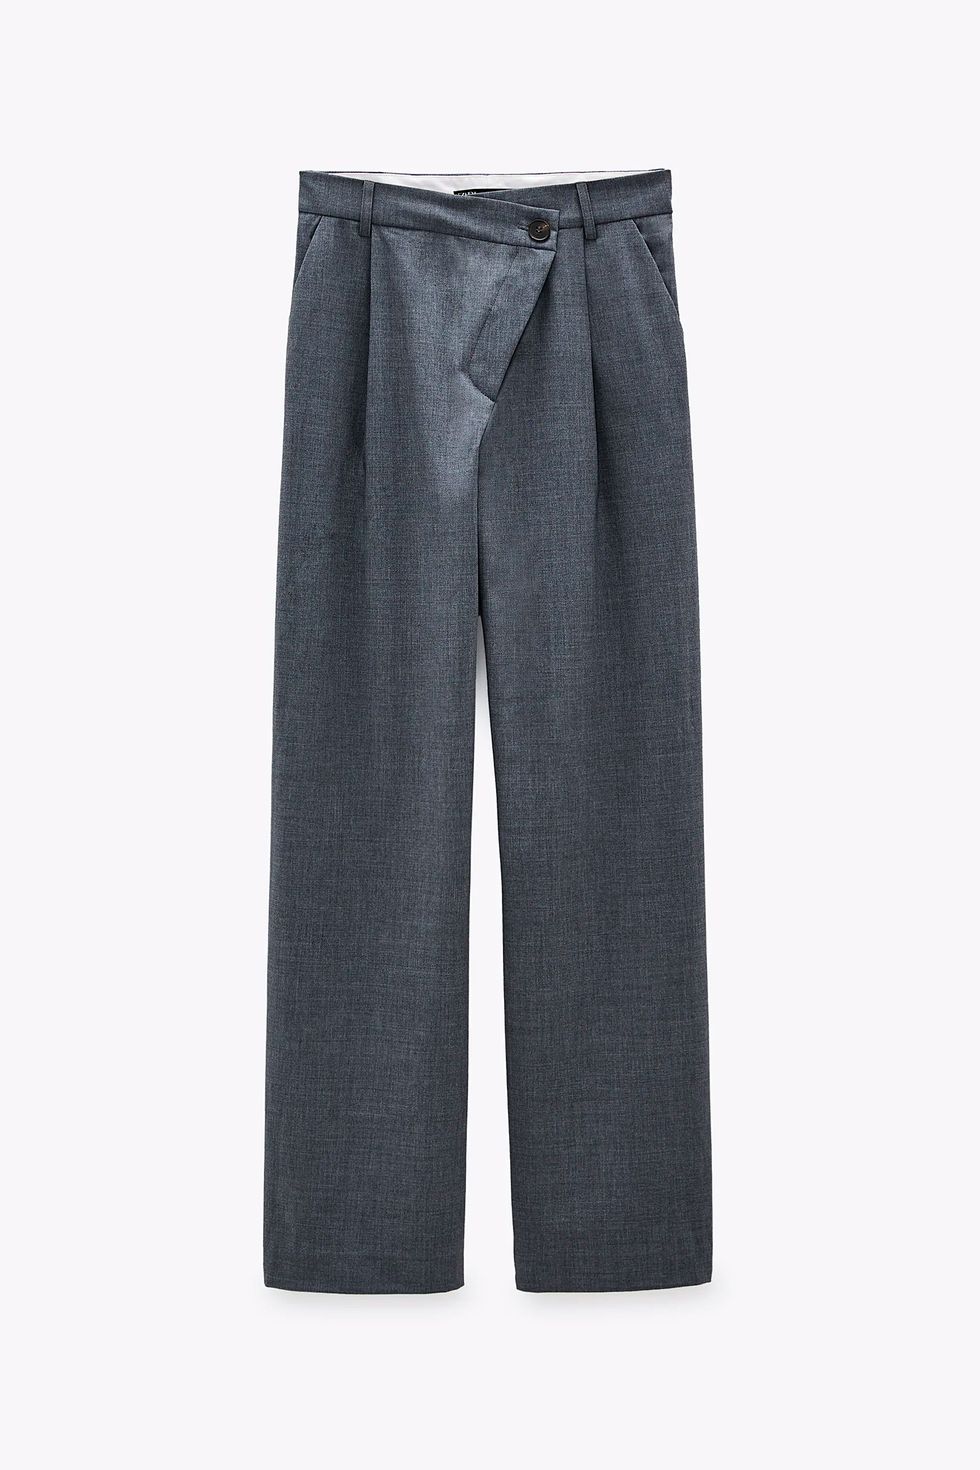 El pantalón ancho de Zara que hace una talla menos de cintura